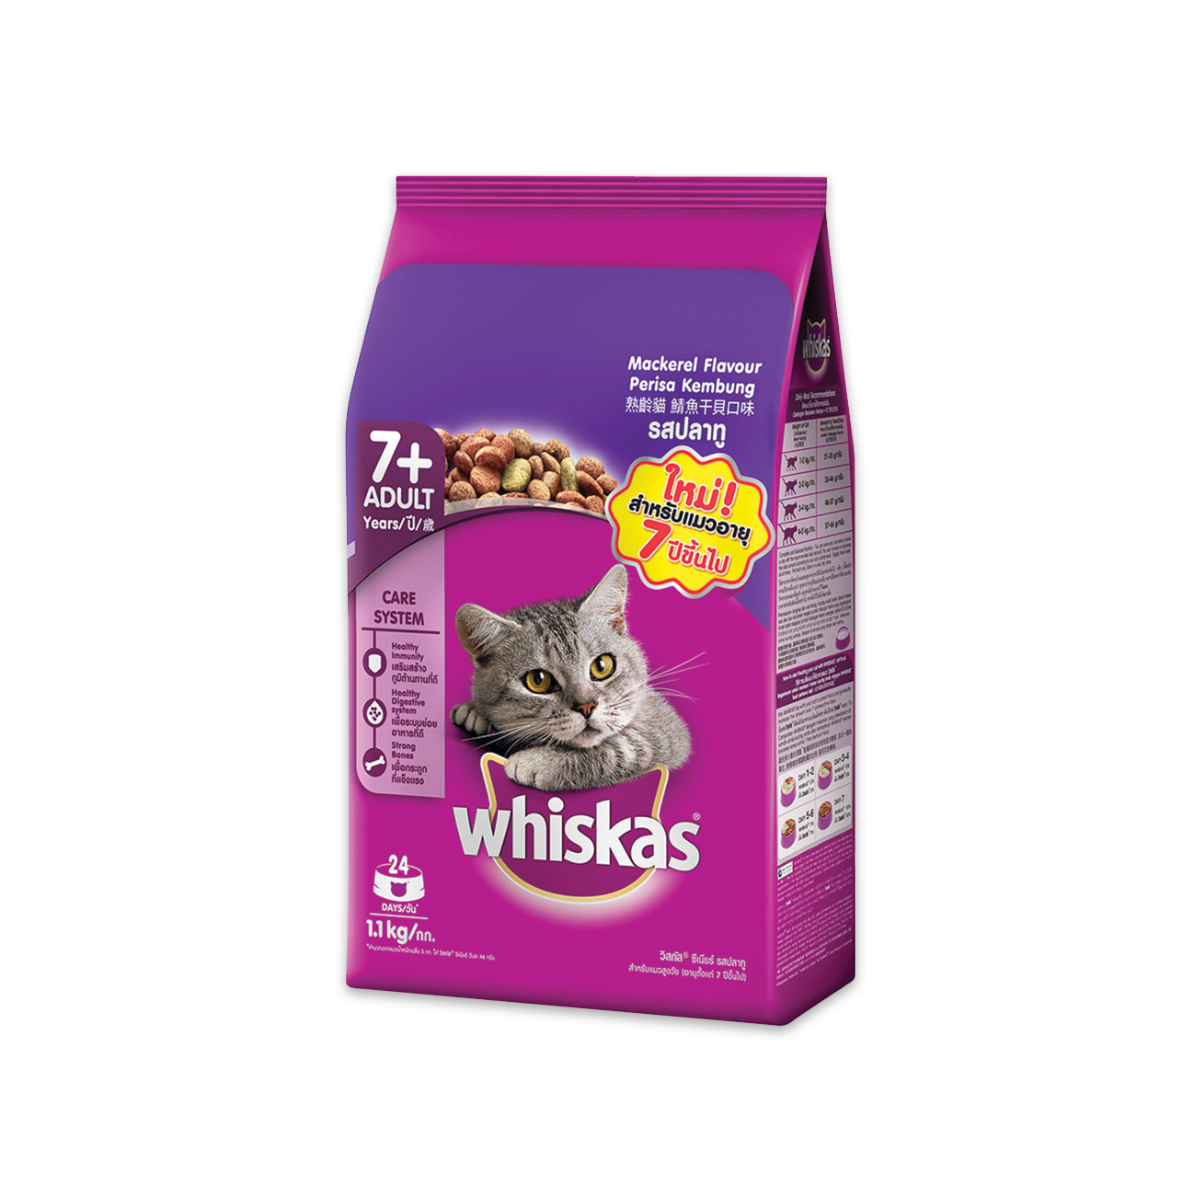 produceren Jane Austen Wantrouwen Whiskas Pockets Senior 7+ Cat Food Mackerel Flavour 1.1kg